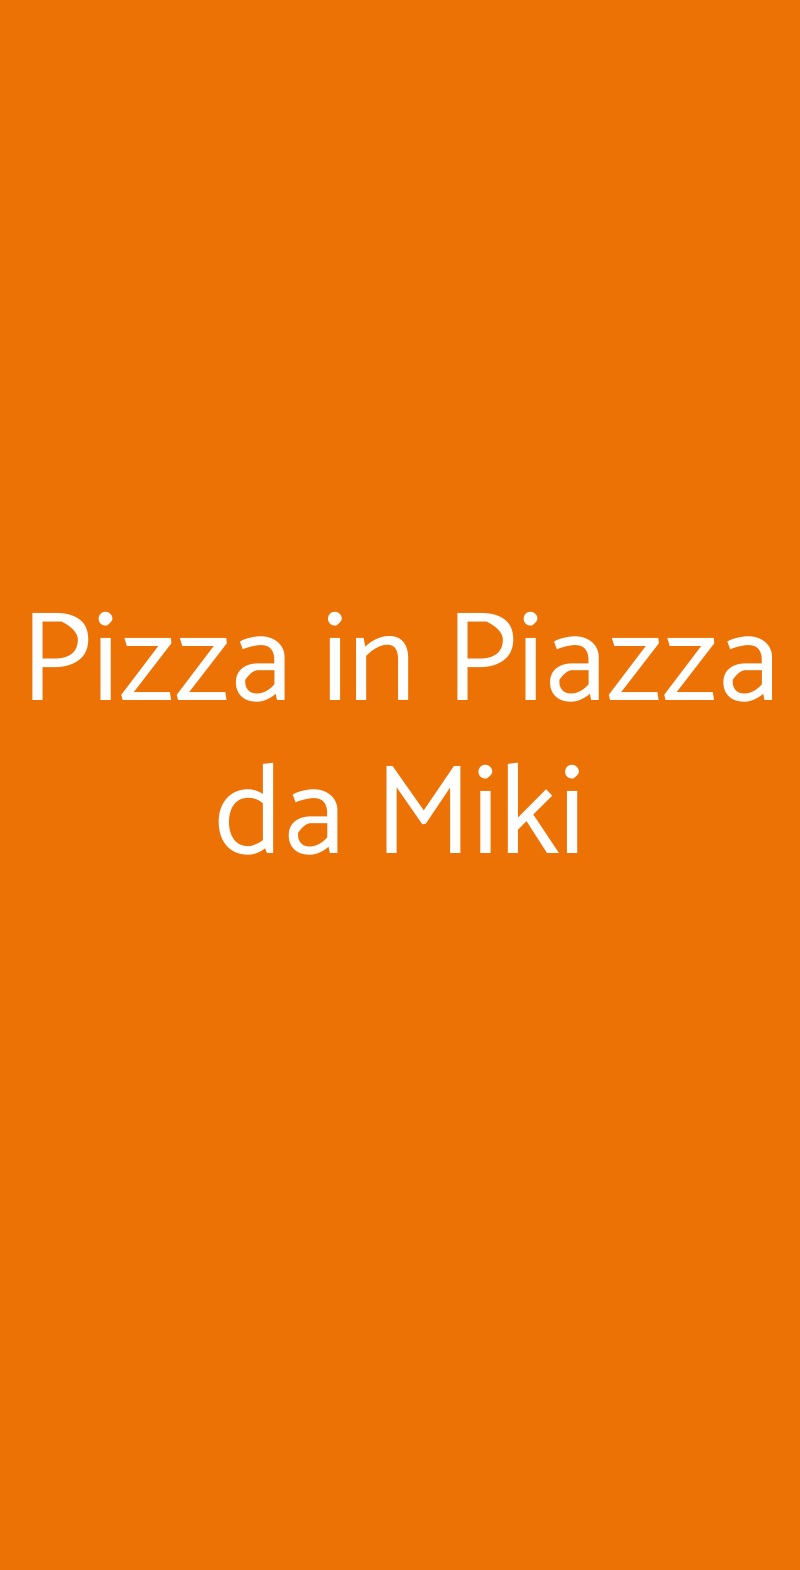 Pizza in Piazza da Miki Cambiano menù 1 pagina